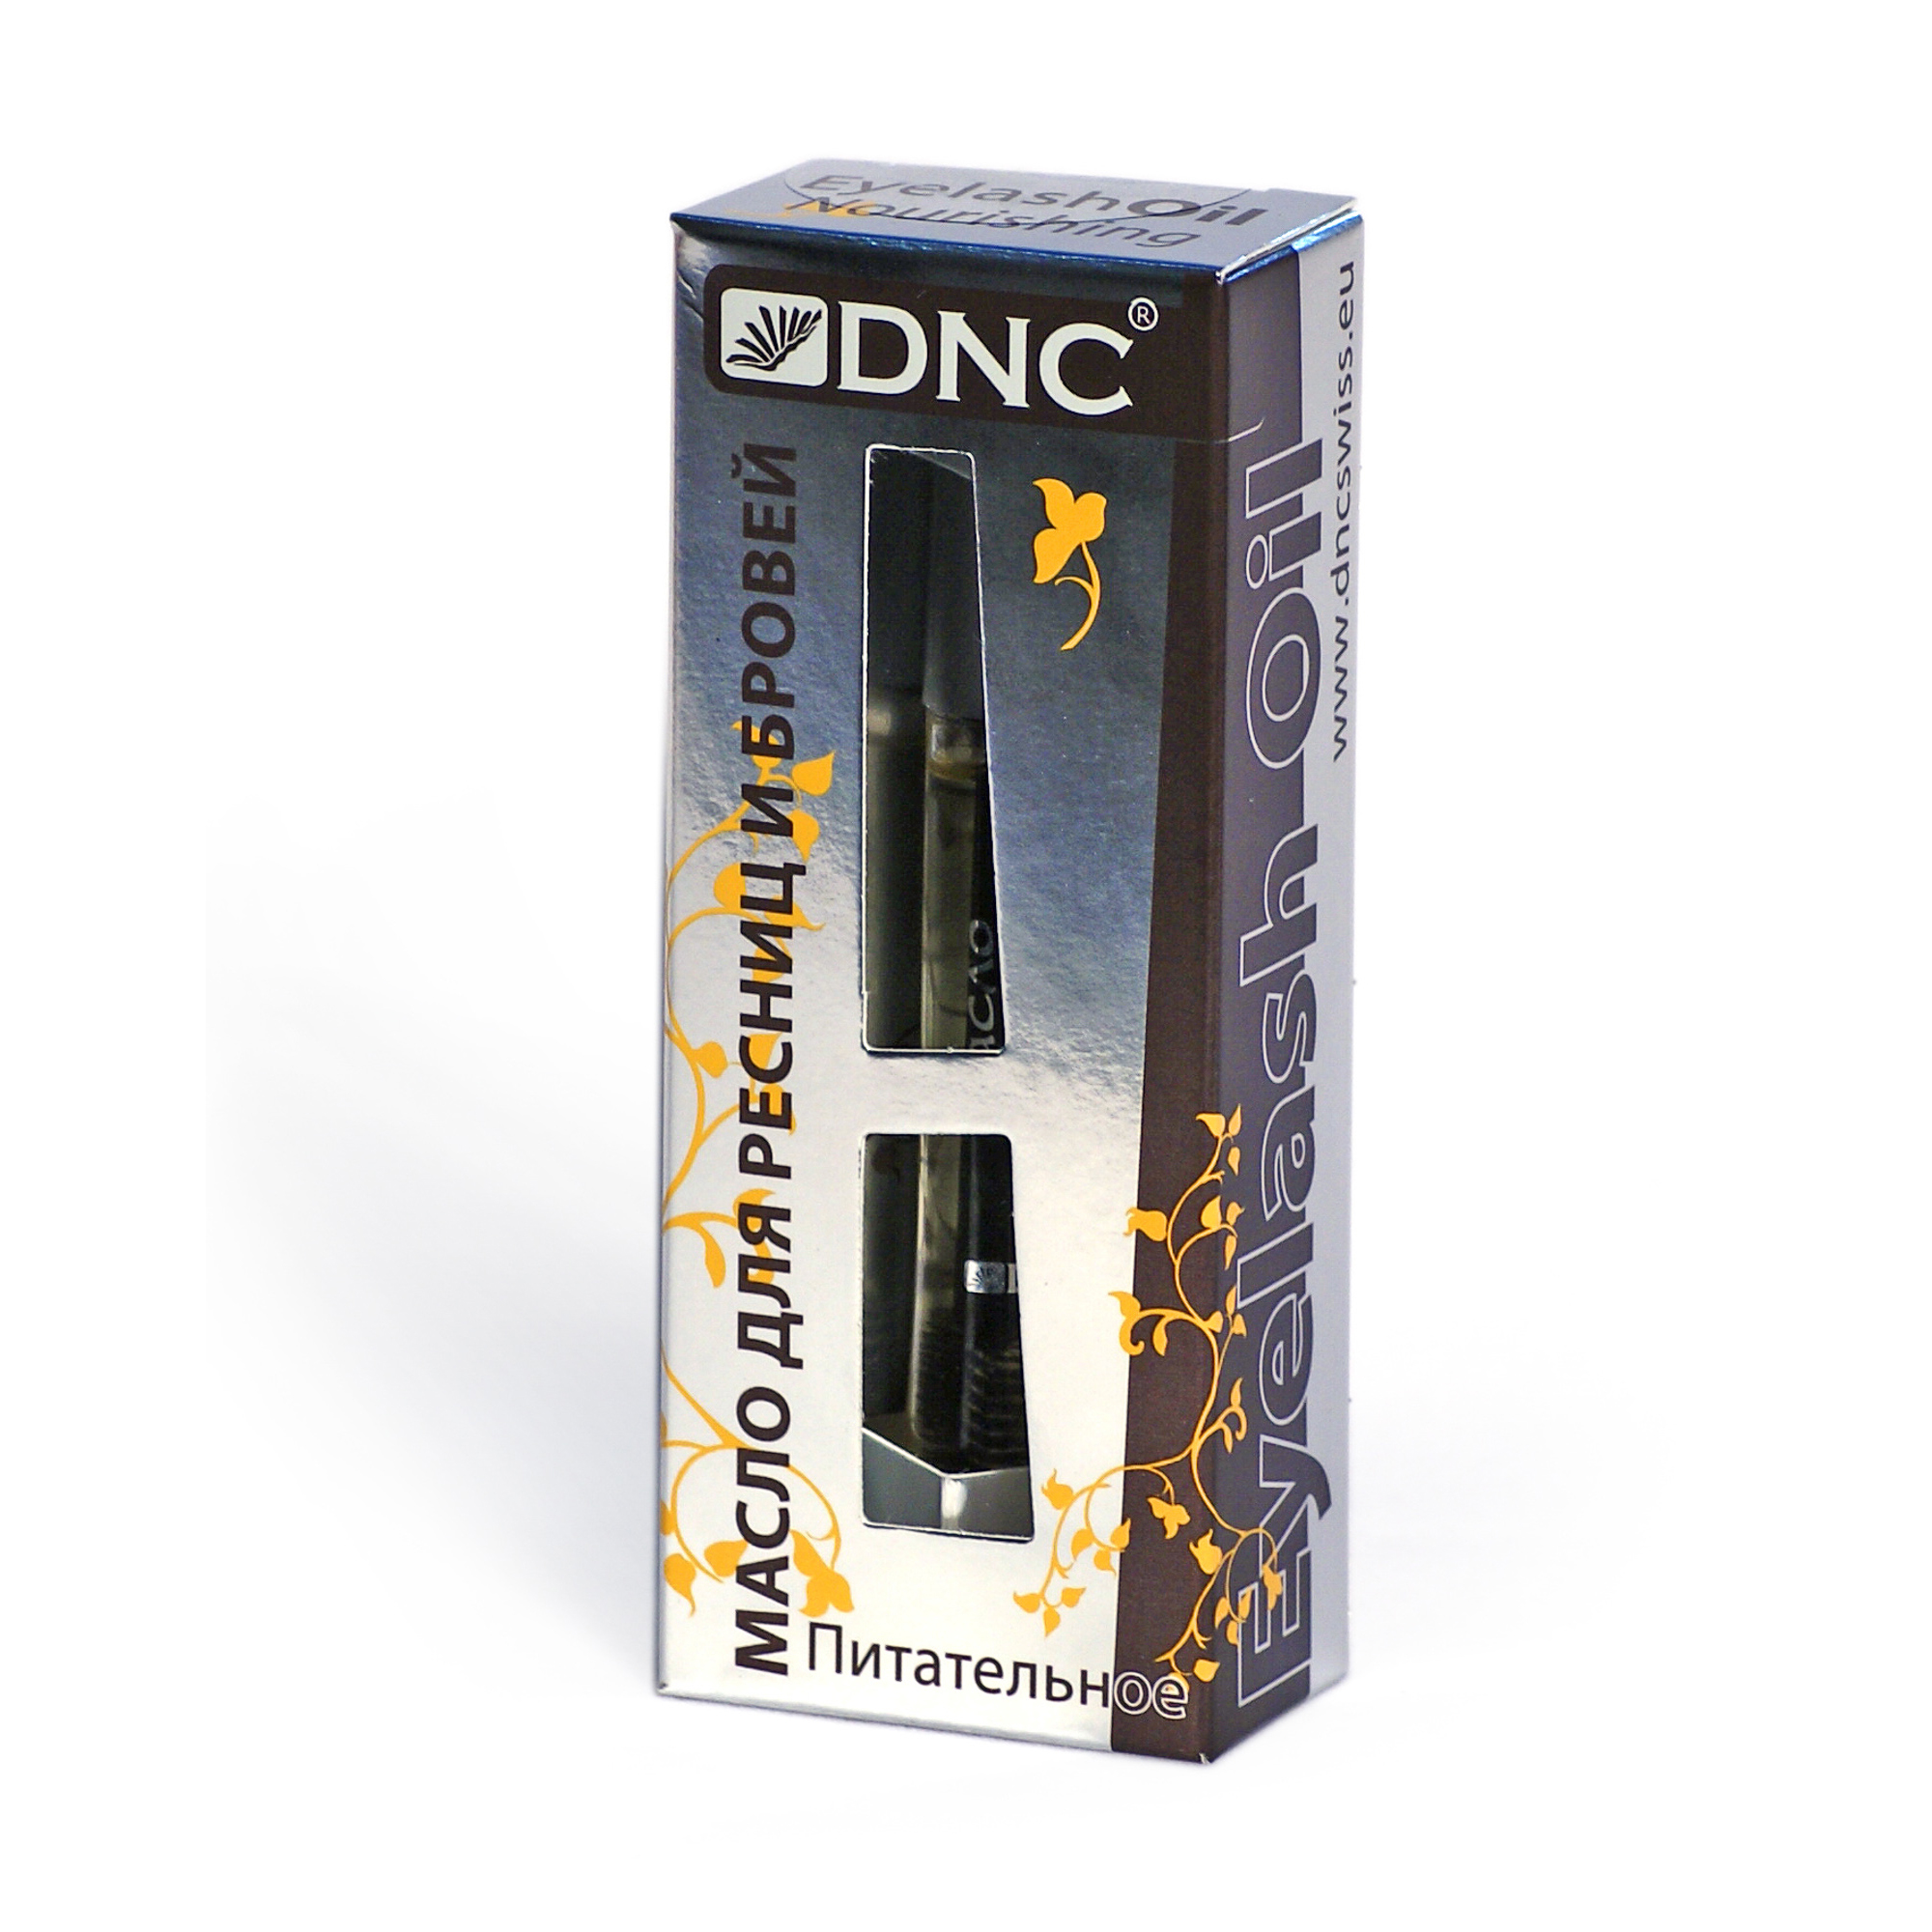 DNC Масло косметическое для ресниц и бровей  питательное, 12 мл - фото 2